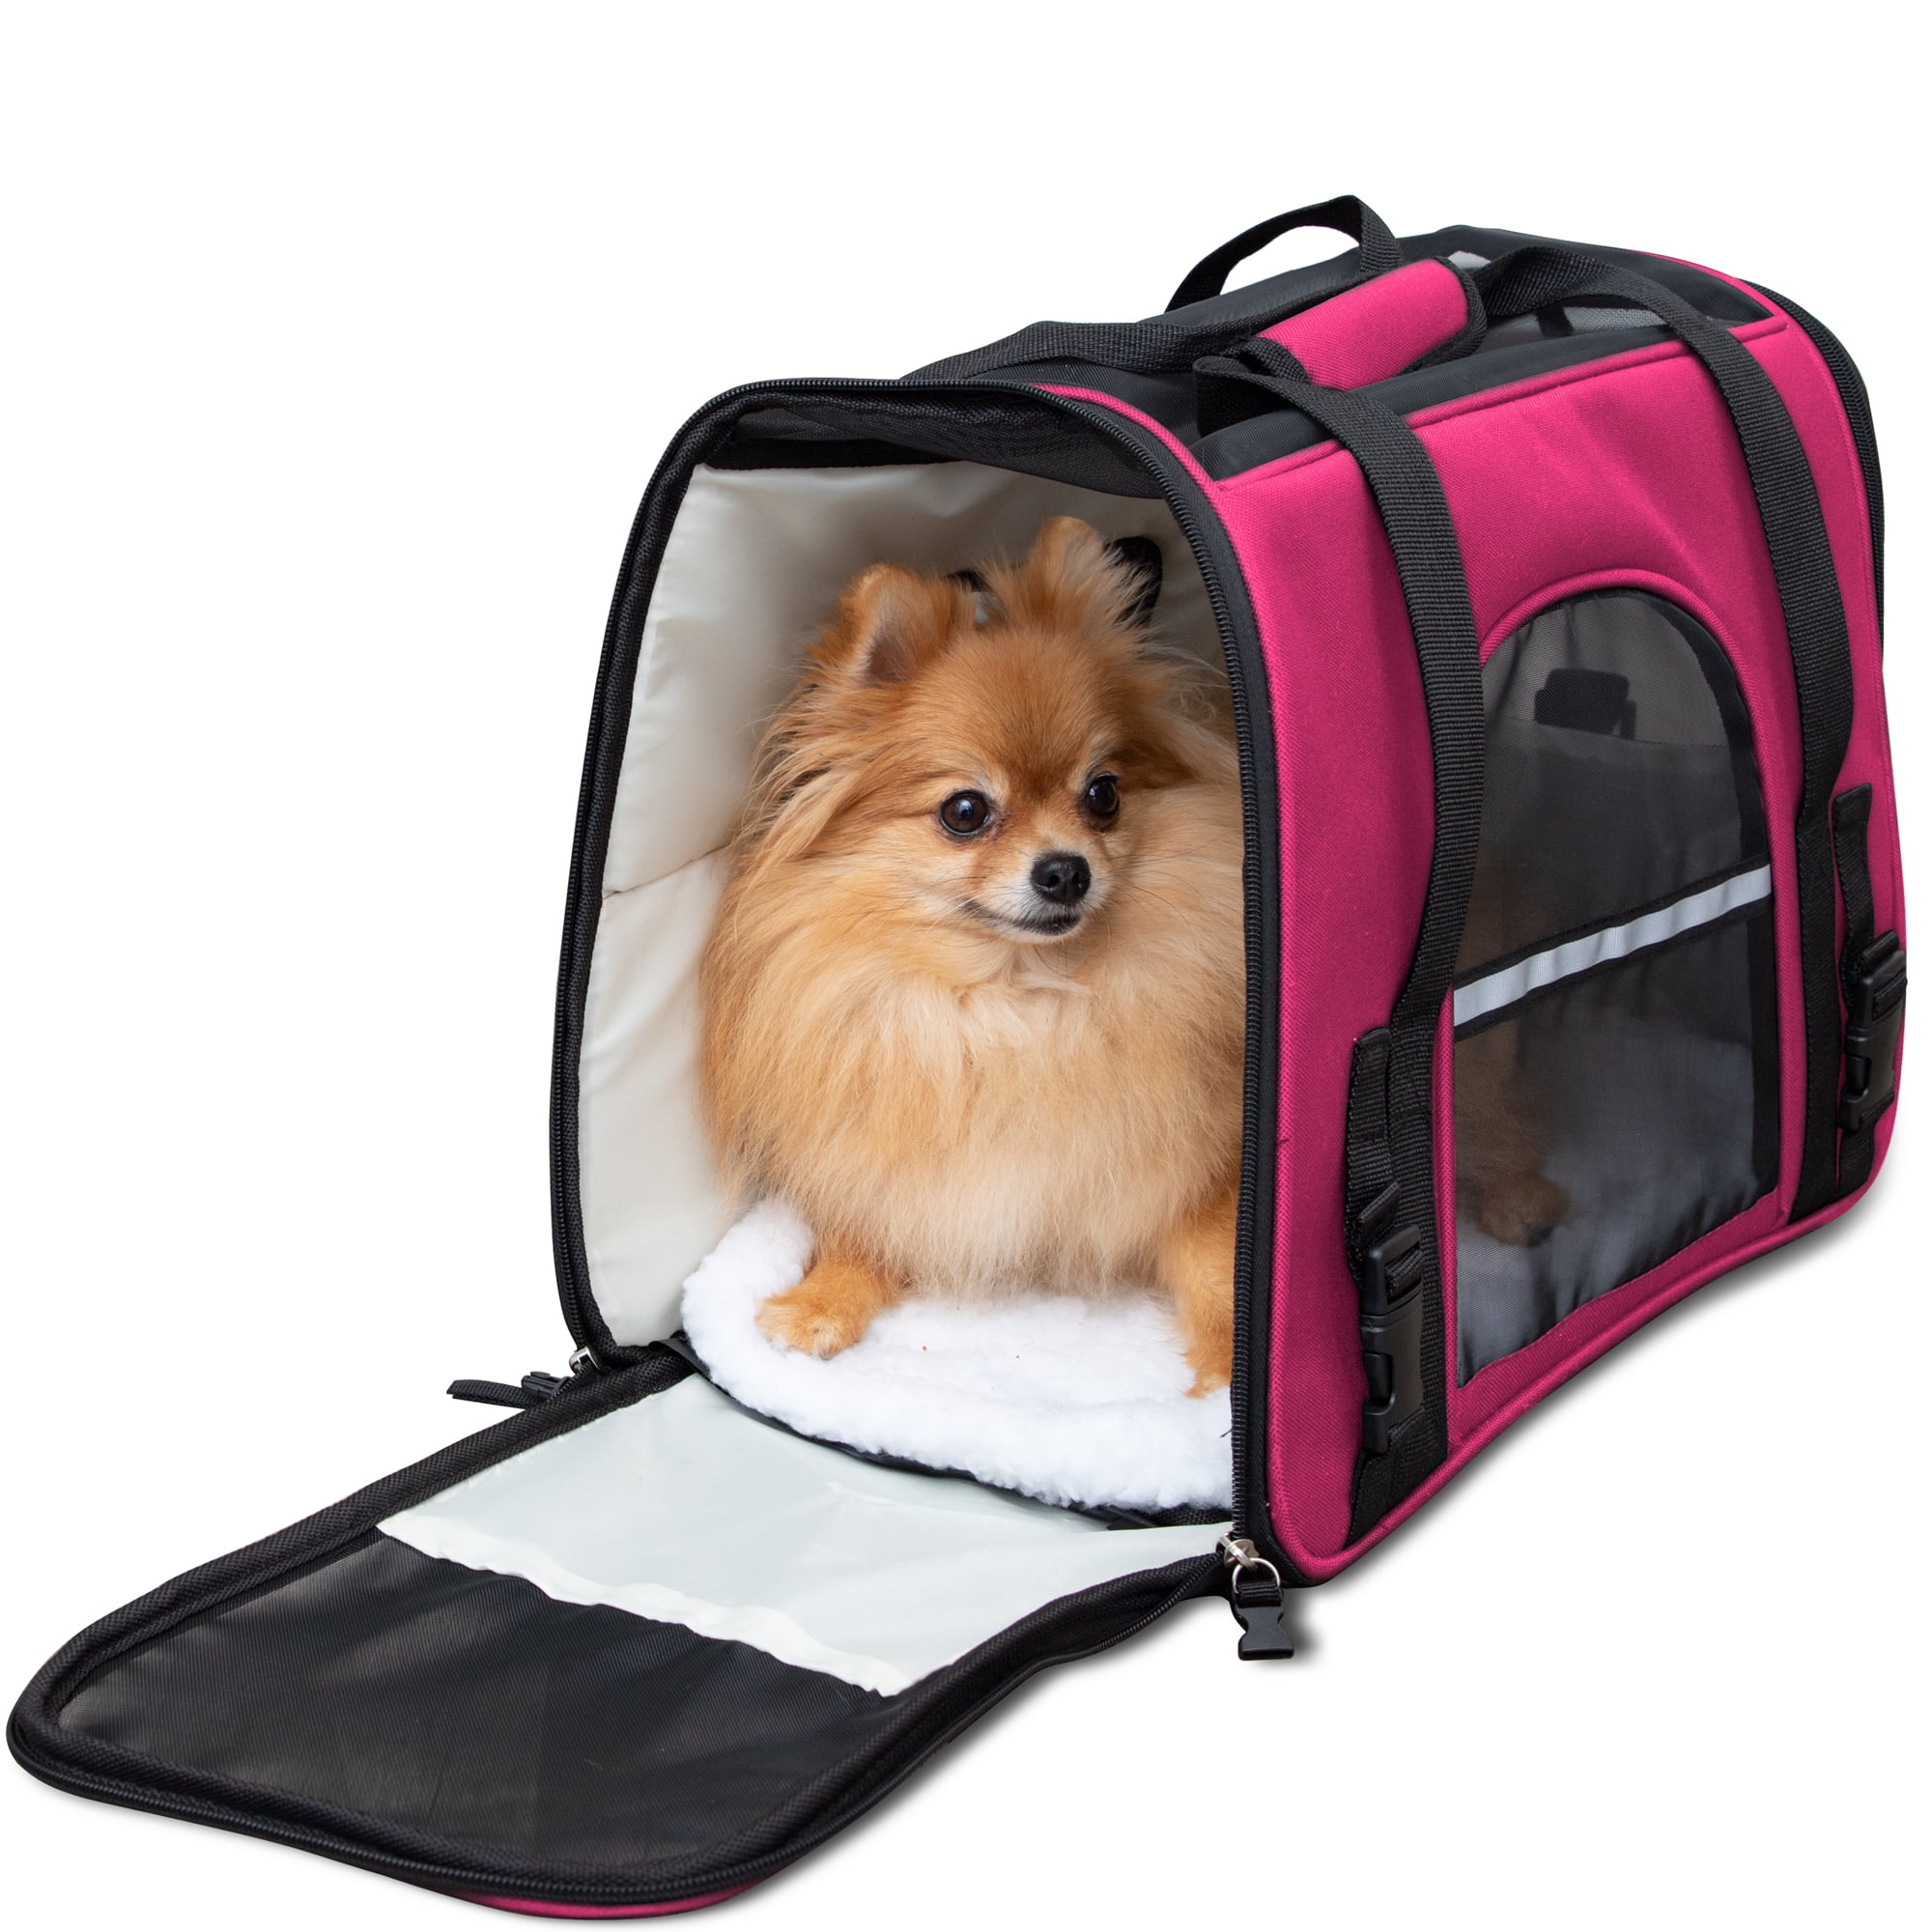 Buy Pet Carrier Bag like Dog Carrier Bag Cat Carrier Bag etc